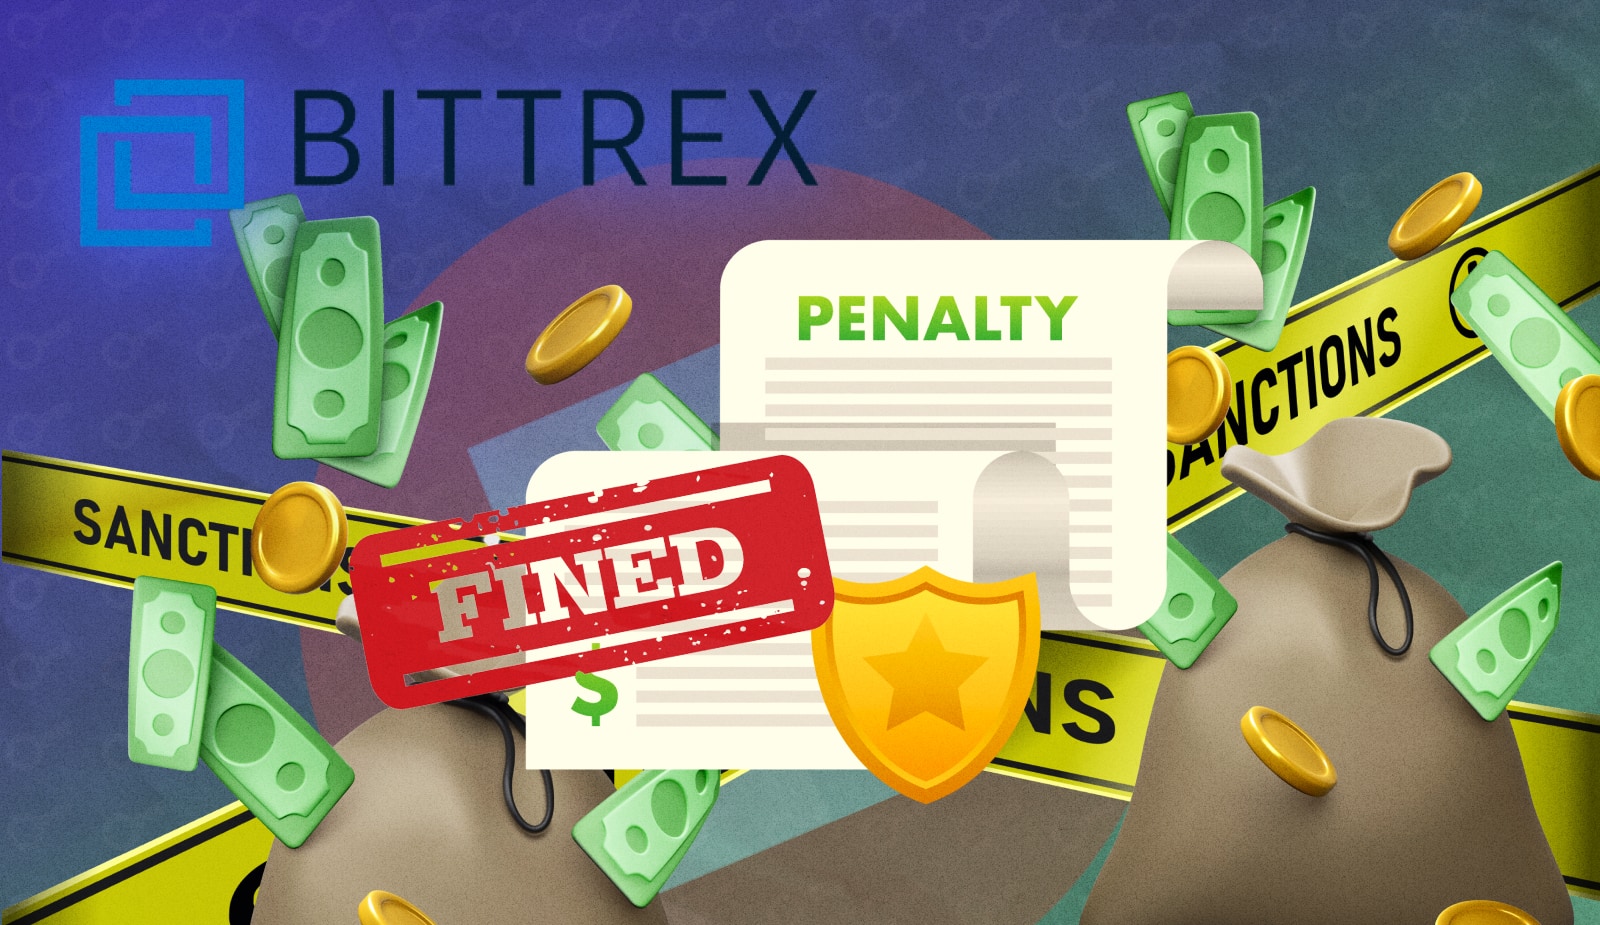 Биржа Bittrex выплатит $29 млн штрафа за злостное нарушение санкций. Заглавный коллаж новости.